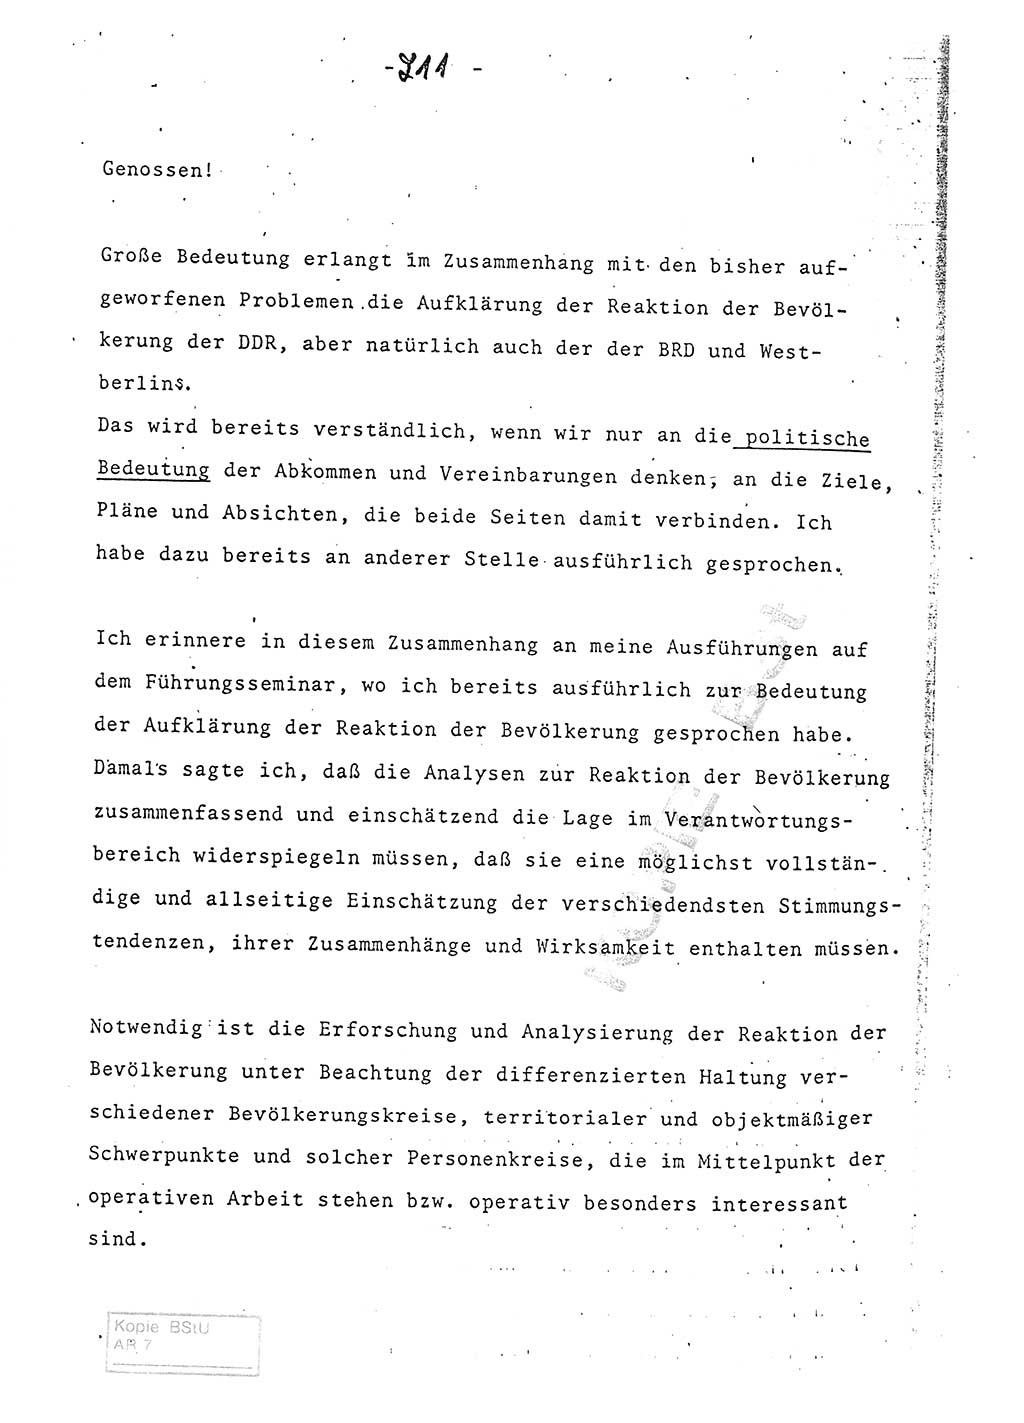 Referat (Entwurf) des Genossen Minister (Generaloberst Erich Mielke) auf der Dienstkonferenz 1972, Ministerium für Staatssicherheit (MfS) [Deutsche Demokratische Republik (DDR)], Der Minister, Geheime Verschlußsache (GVS) 008-150/72, Berlin 25.2.1972, Seite 211 (Ref. Entw. DK MfS DDR Min. GVS 008-150/72 1972, S. 211)